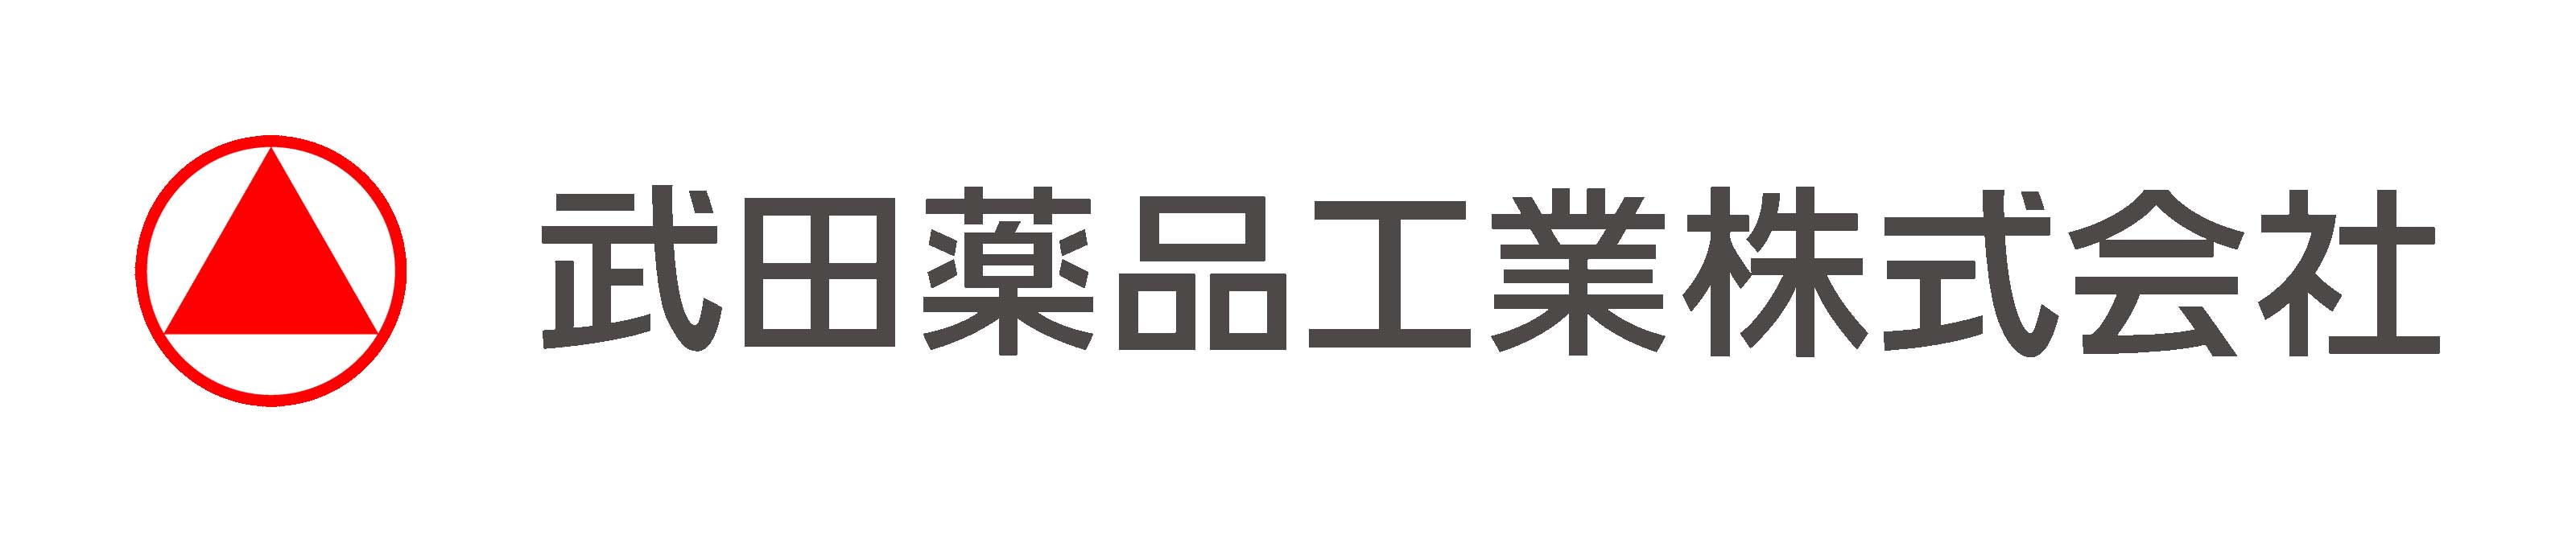 TAKEDA logo.jpg